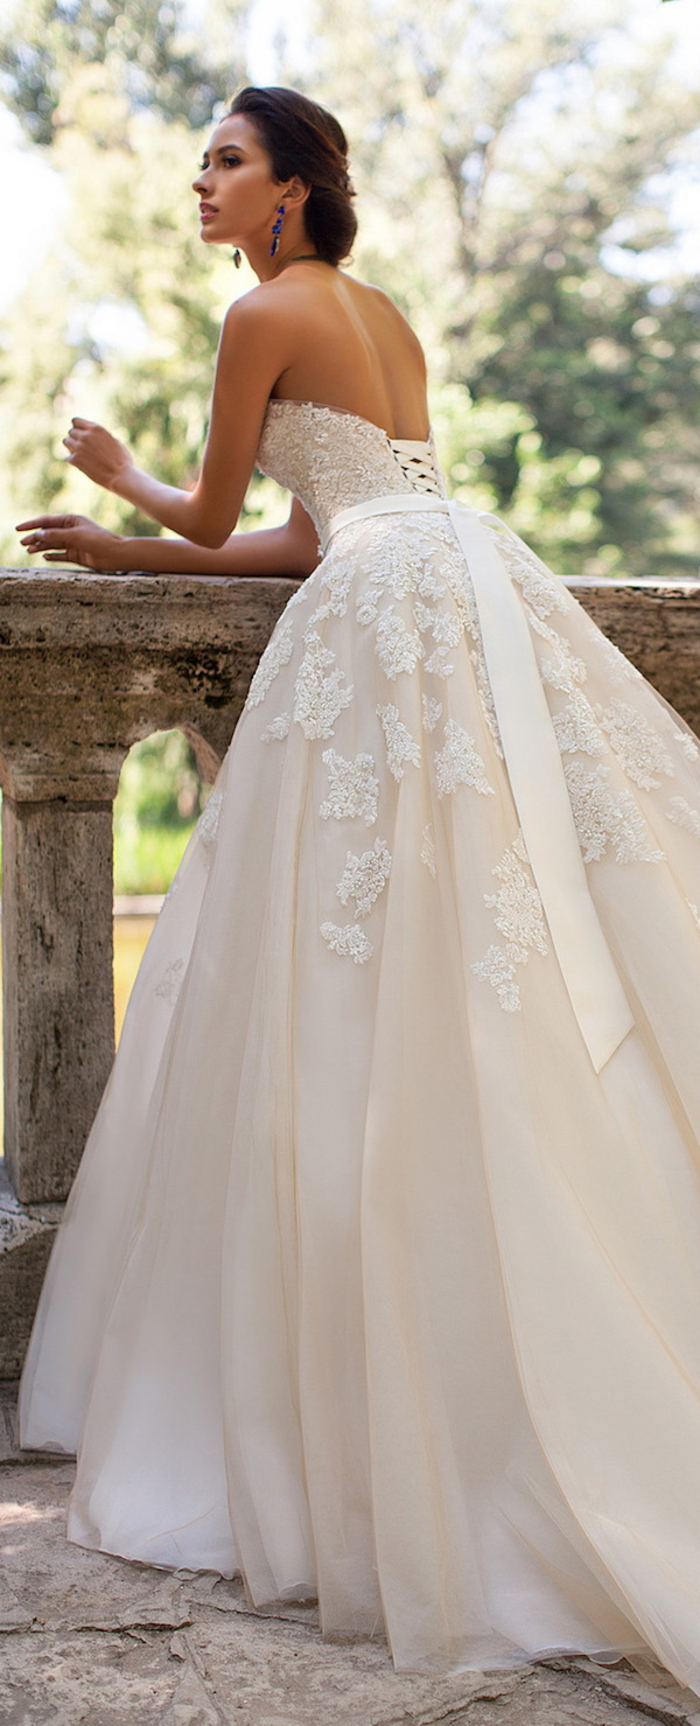 weites Hochzeitskleid mit Korsett und Spitzen-Elementen, romantischer Look, trägerlos, mit tiefem Rückenausschnitt